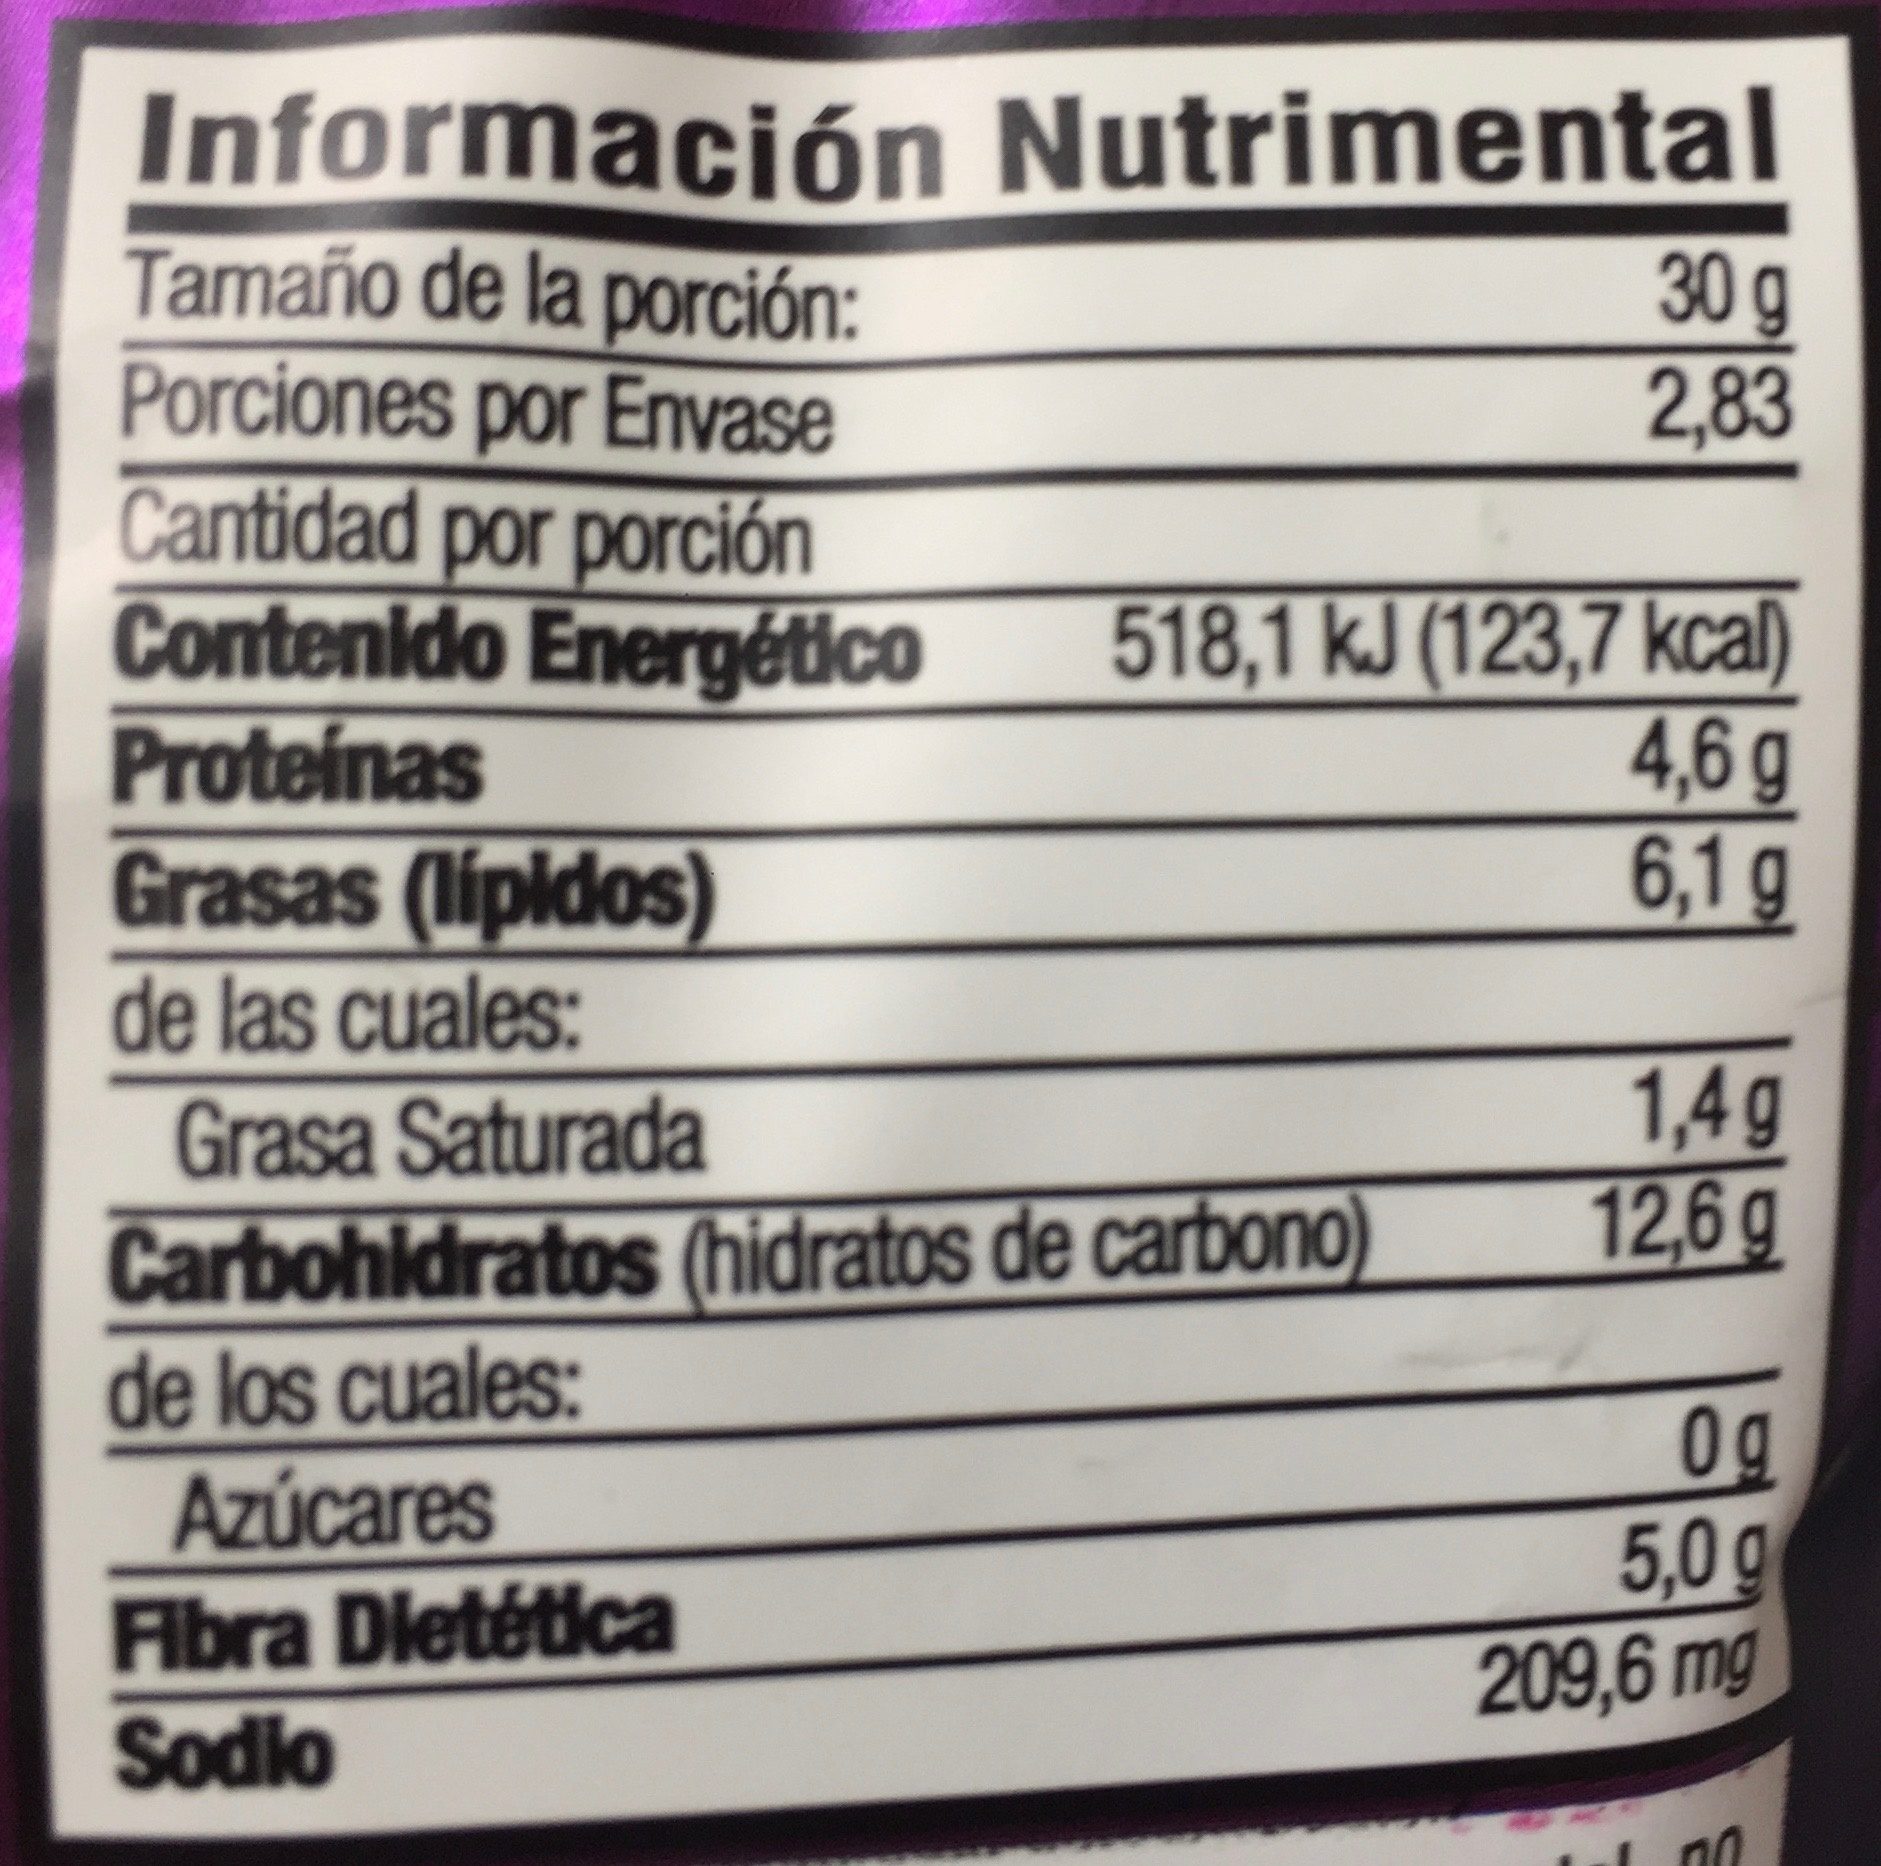 Garbanzos Enchilados - Información nutricional